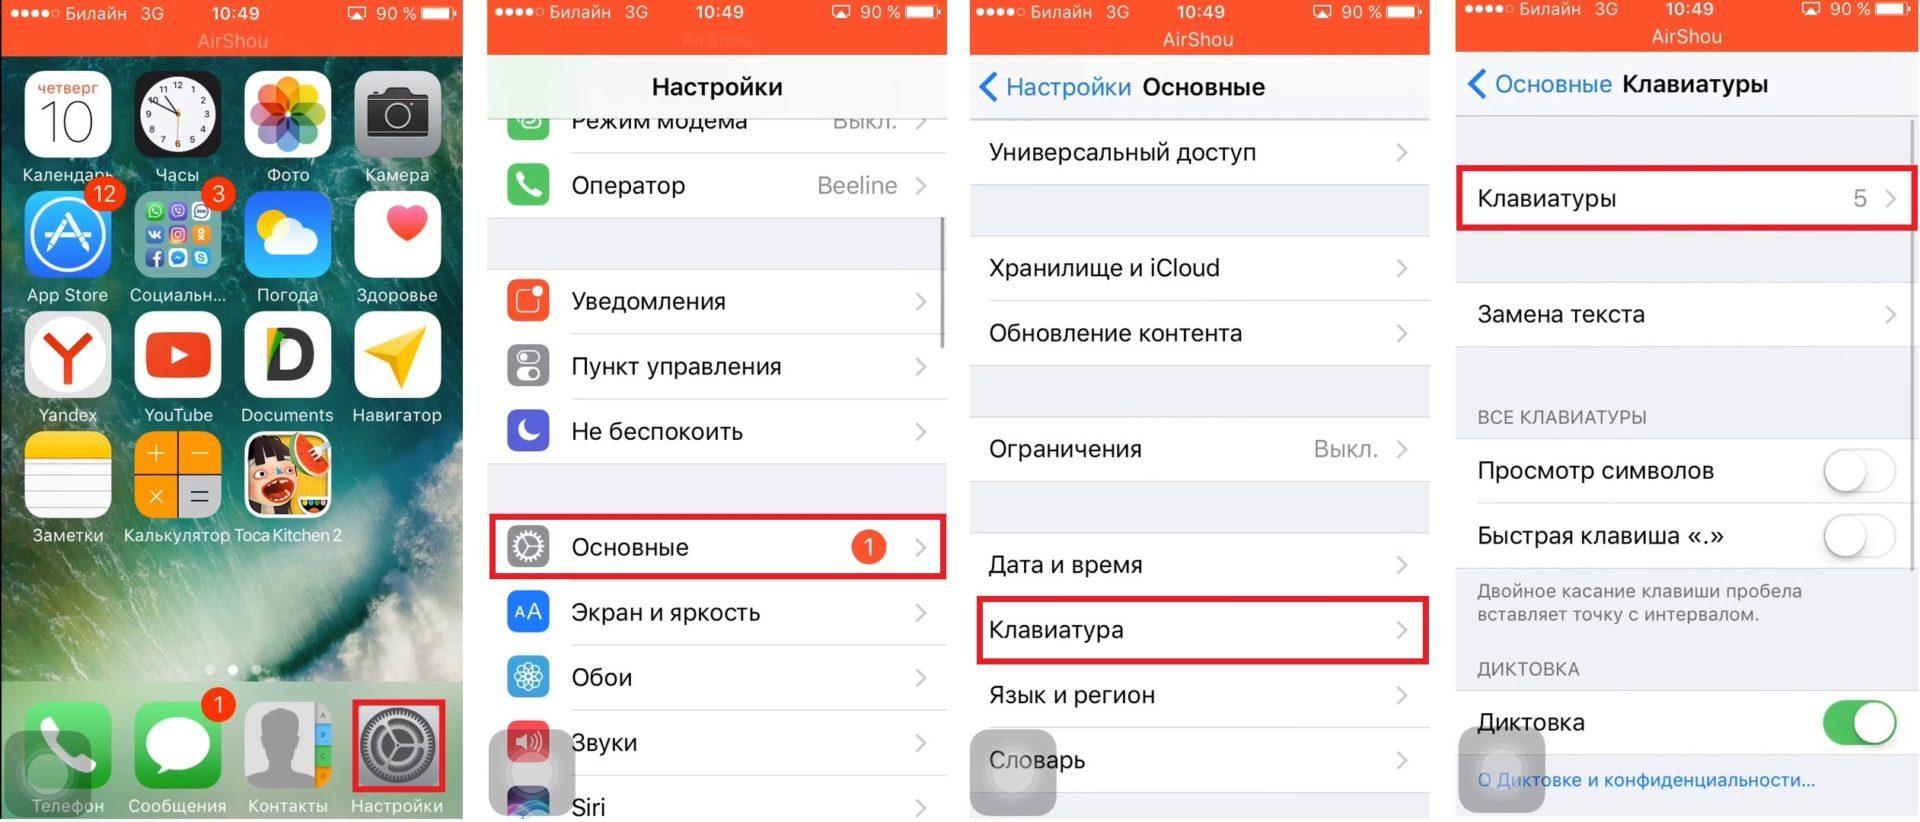 Как перевести телеграмм на русский язык айфон фото 100